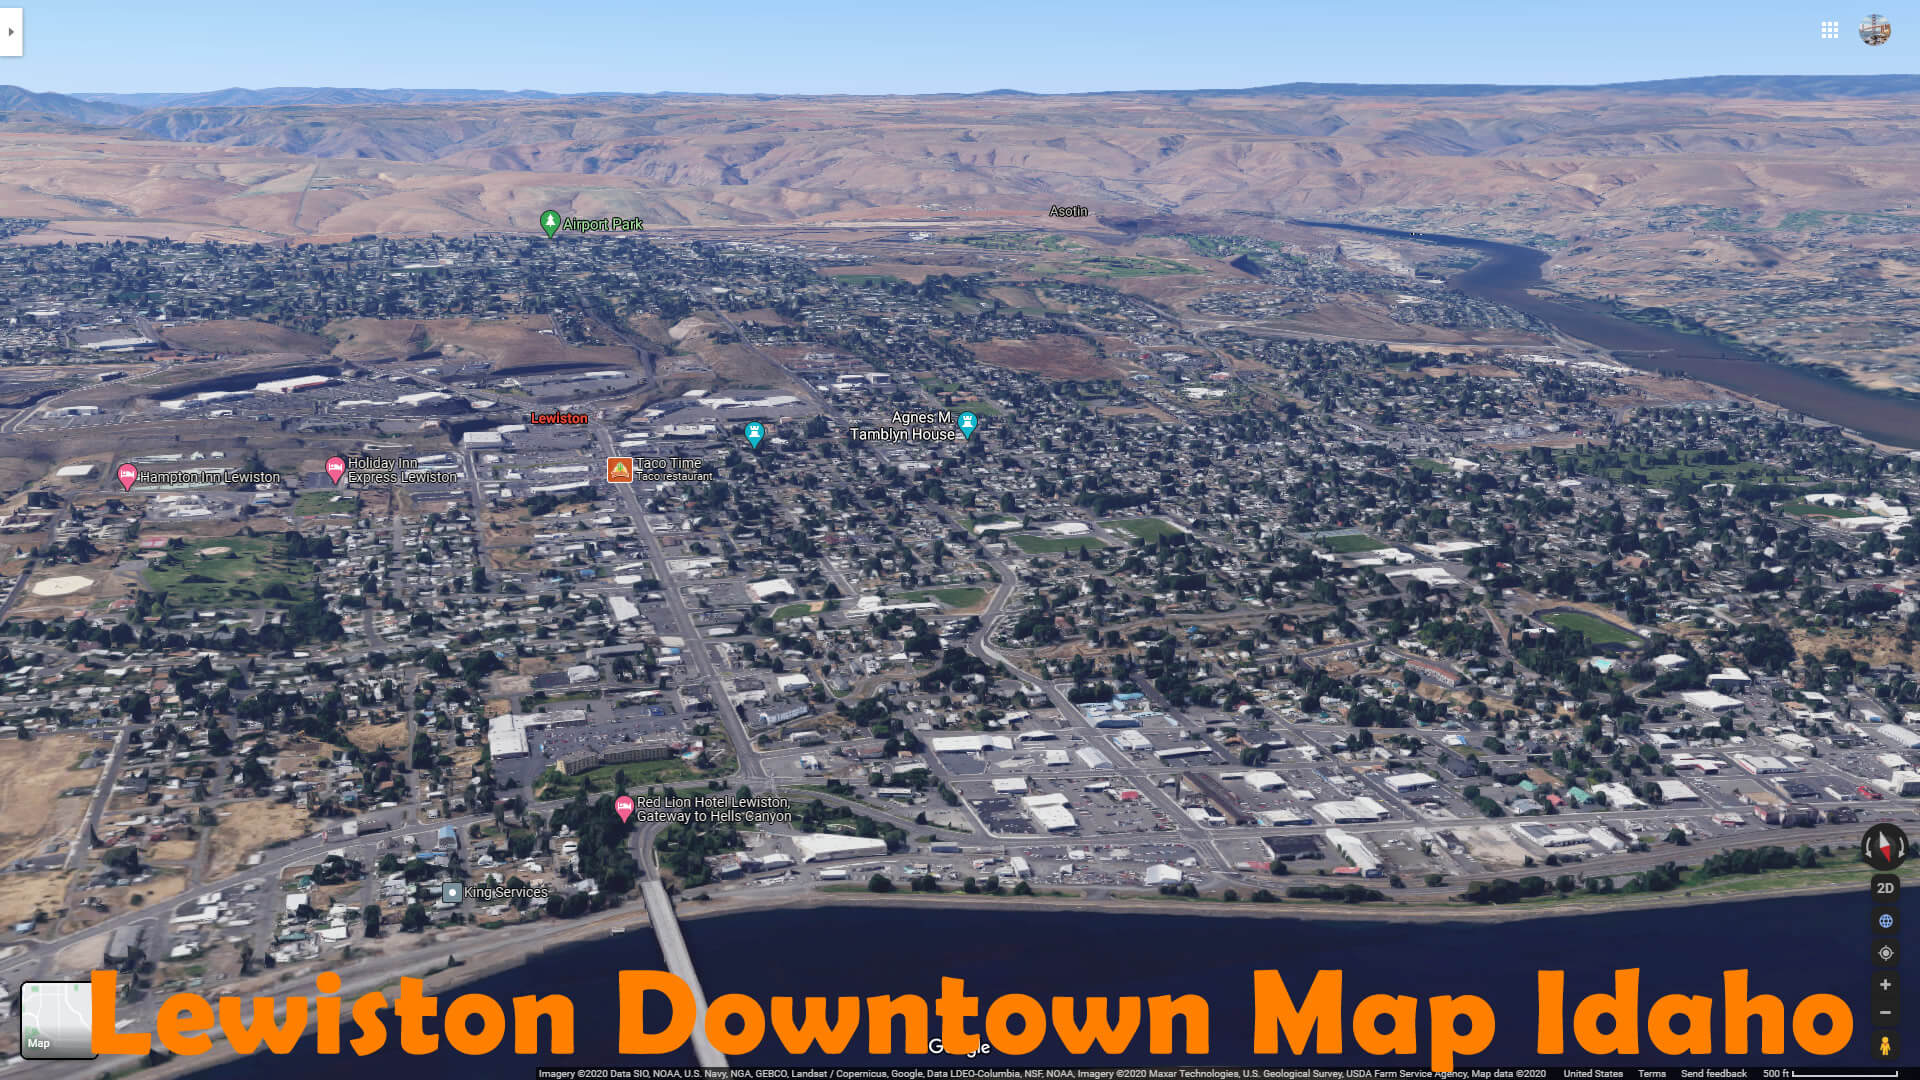 Lewiston Downtown Map Idaho